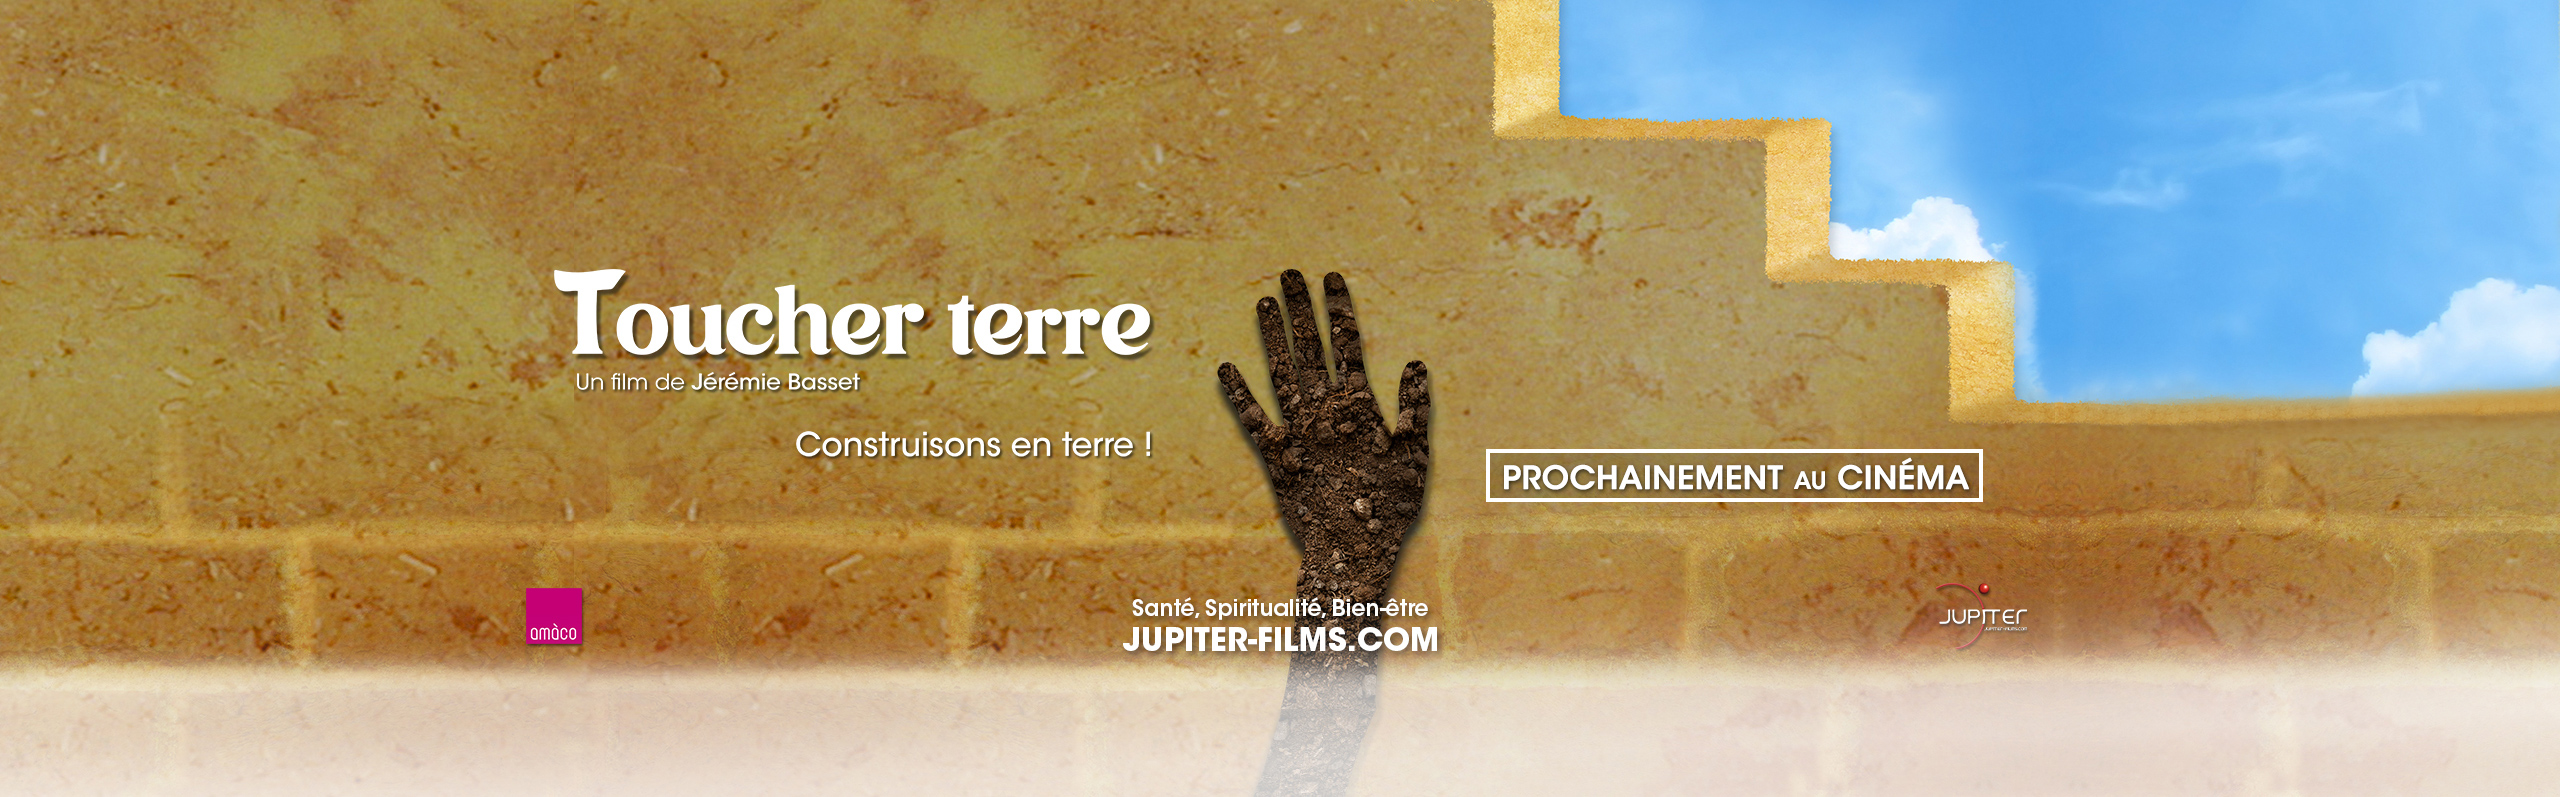 Toucher terre, le film documentaire co-produit par amàcoet les Films du Lierre